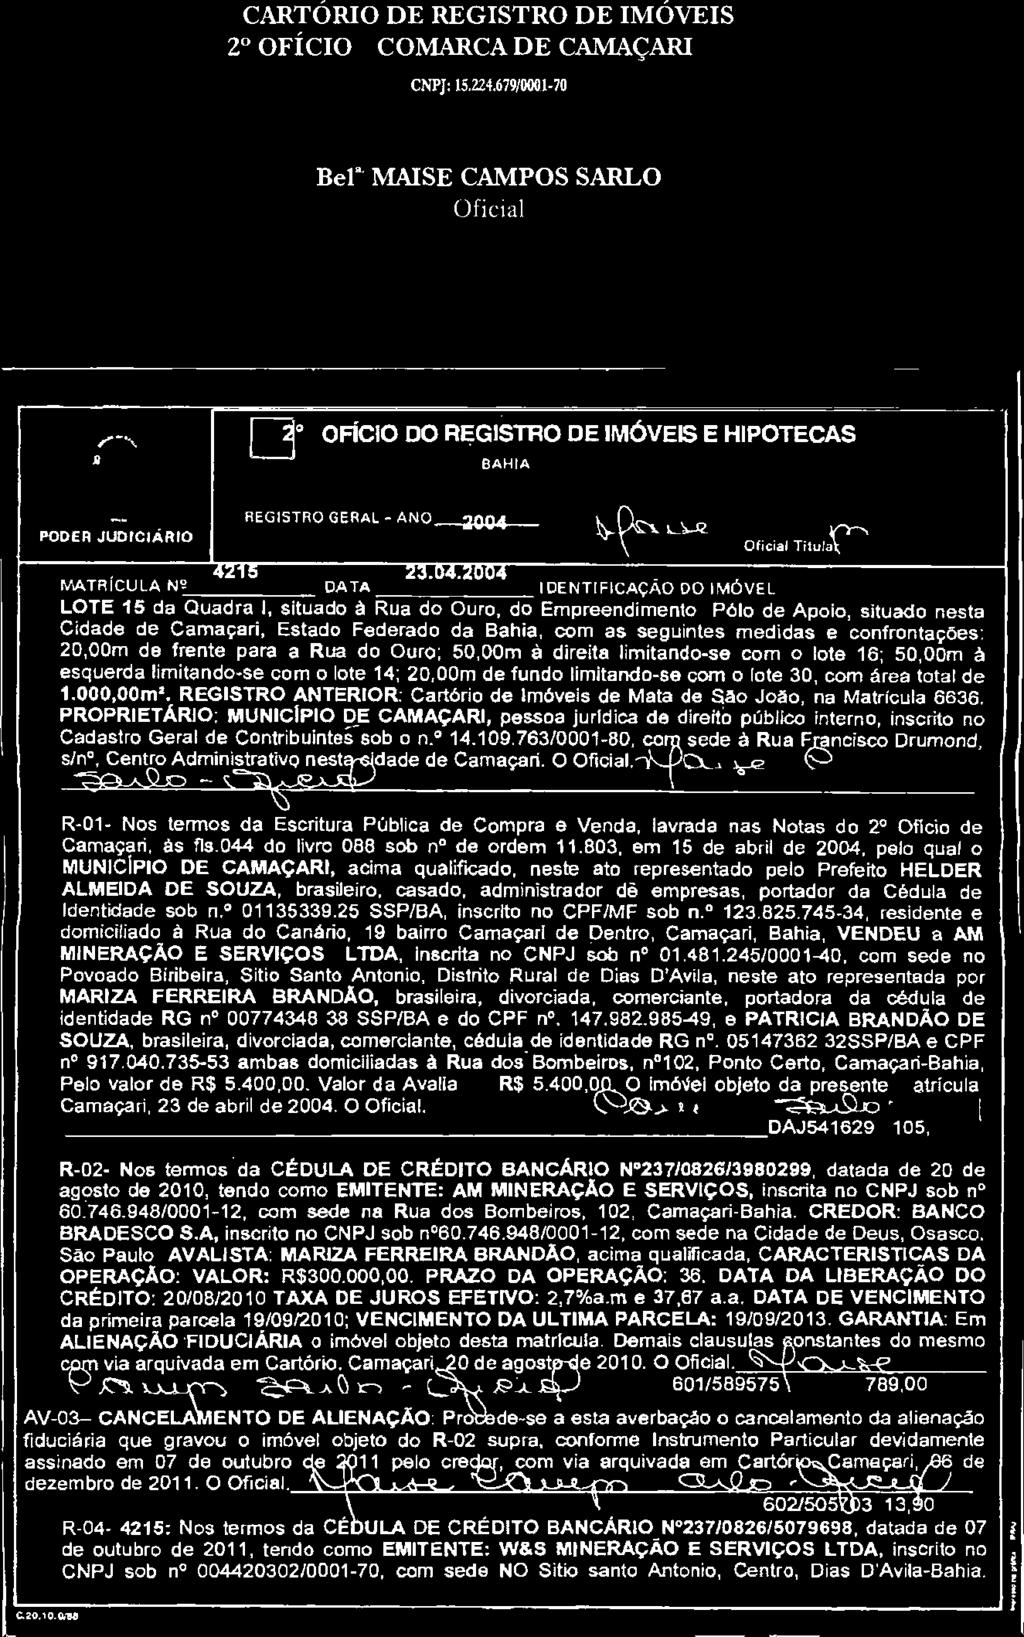 CARTÓRIO DE REGISTRO DE IMÓVEIS 2' OFICIO - COMARCA DE CAMAÇARI - BA CNPJ: 15.224.679/0001-70 Av.